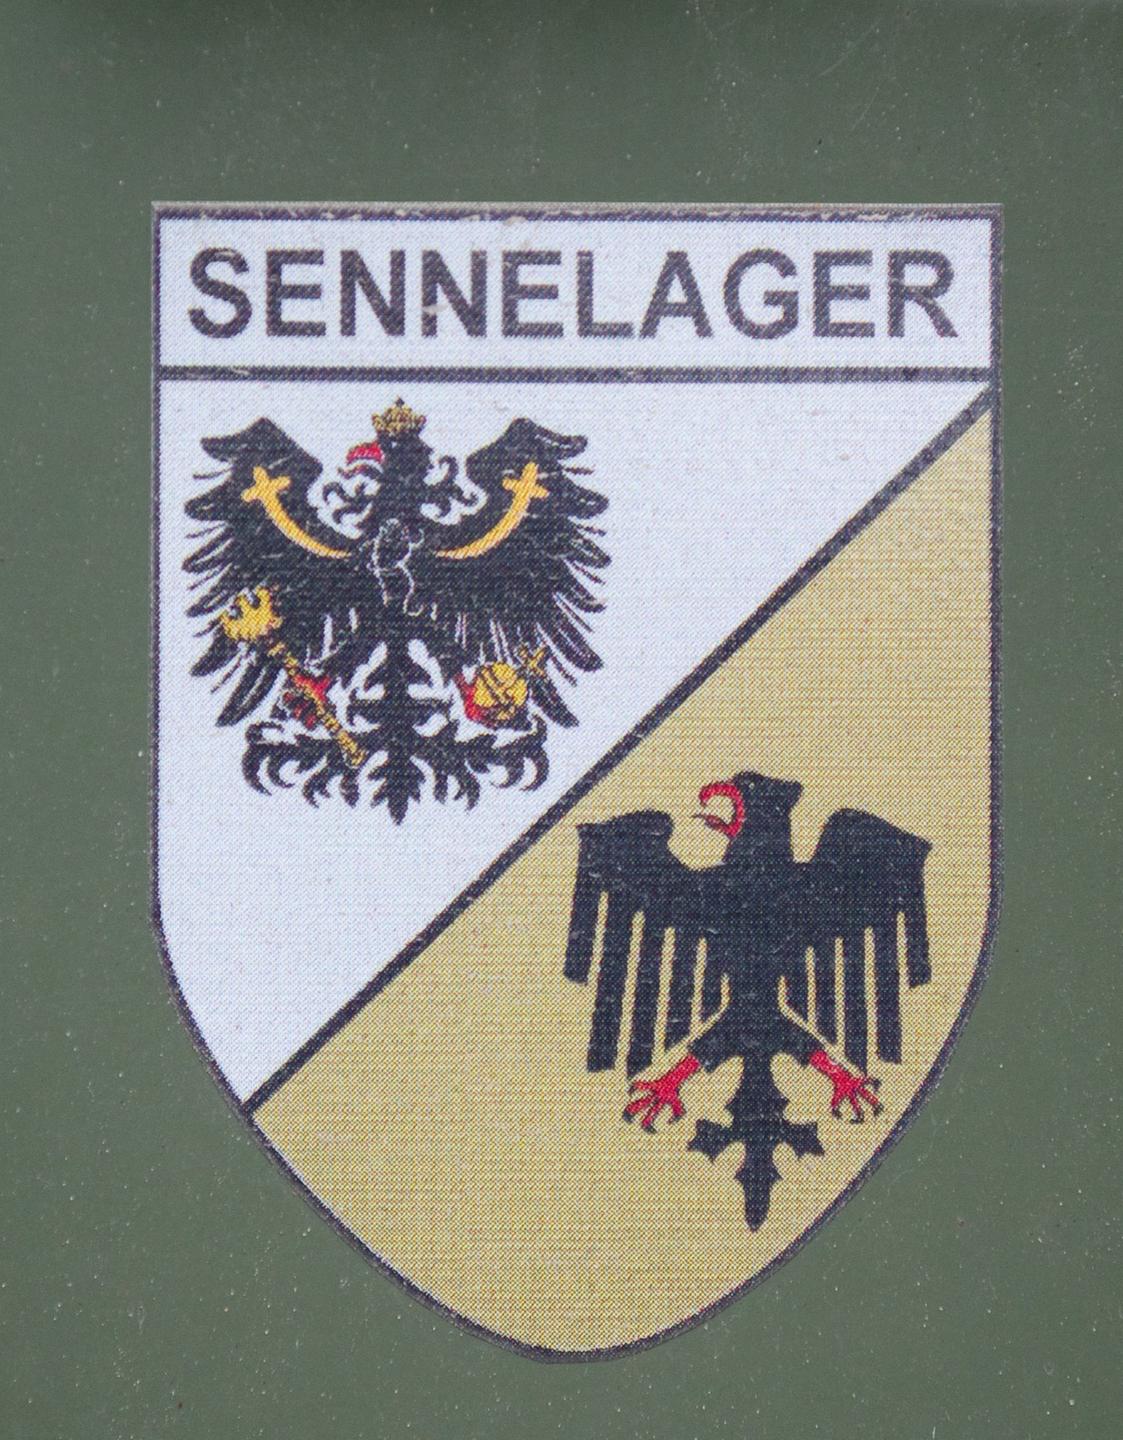 Das Abzeichen "Sennelager" auf dem britischen Truppenübungsplatz in Paderborn-Sennelager 